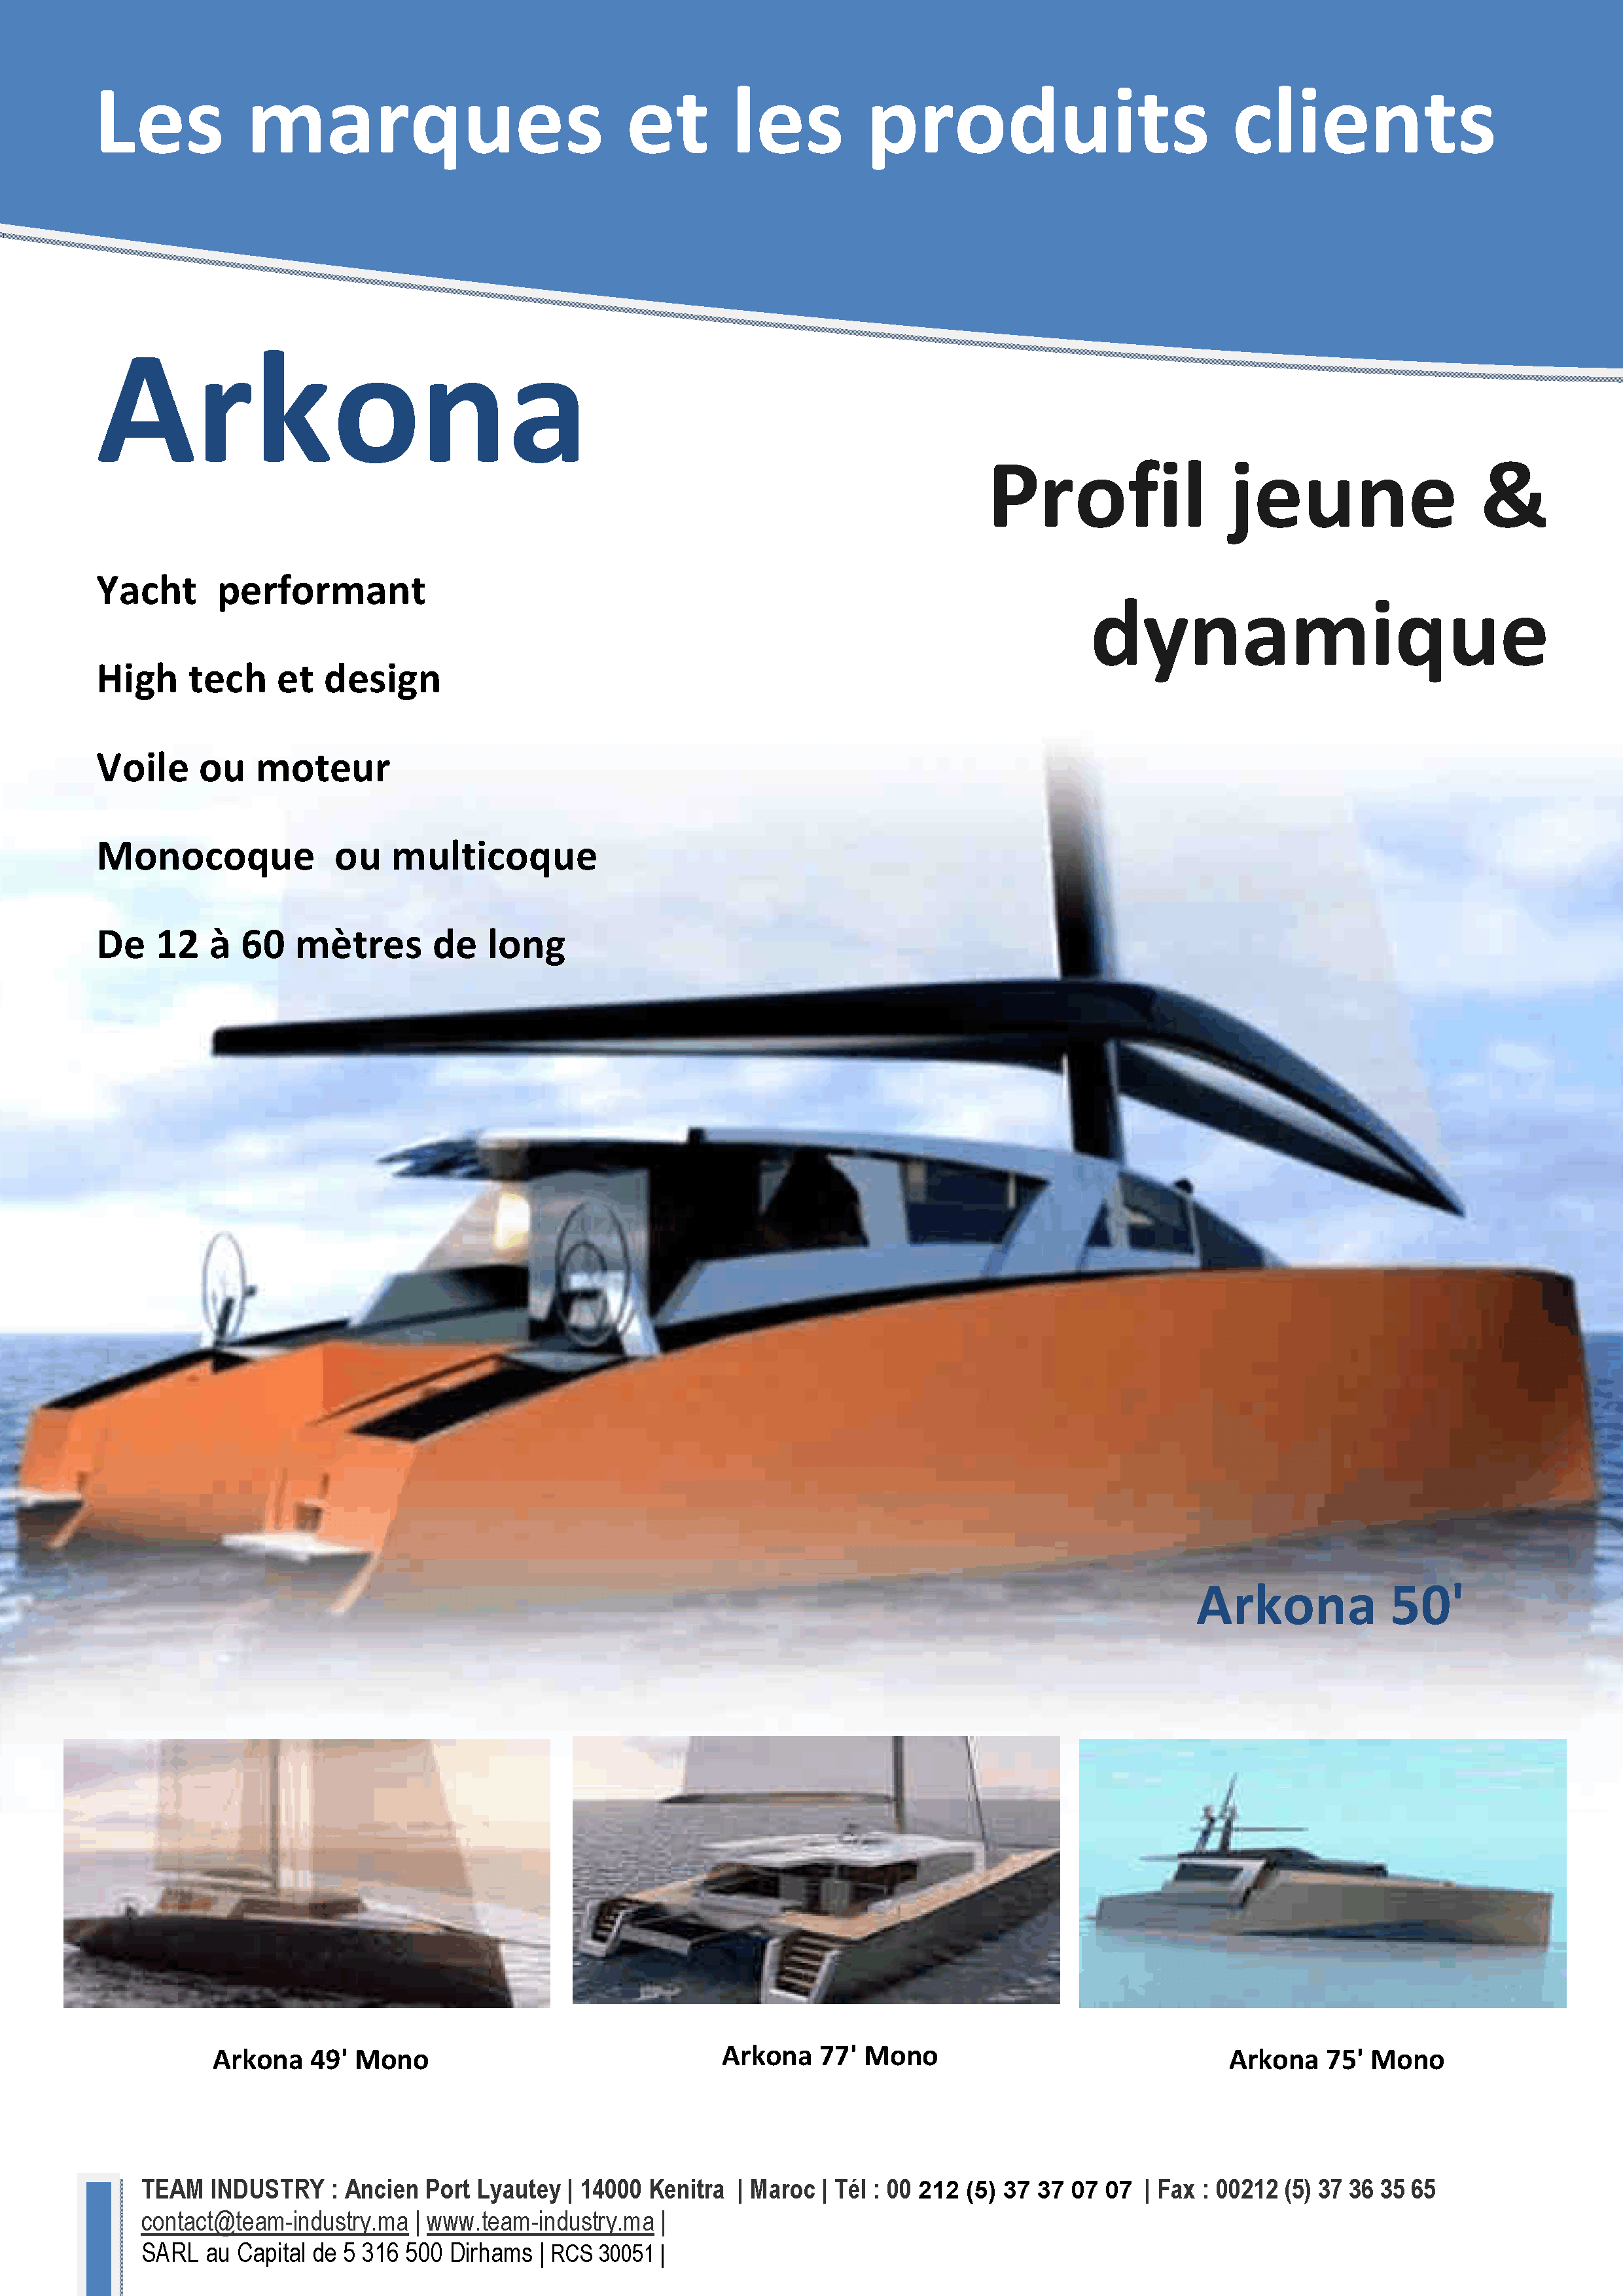 Présentation Arkona yacht - groupe Simon, Genève